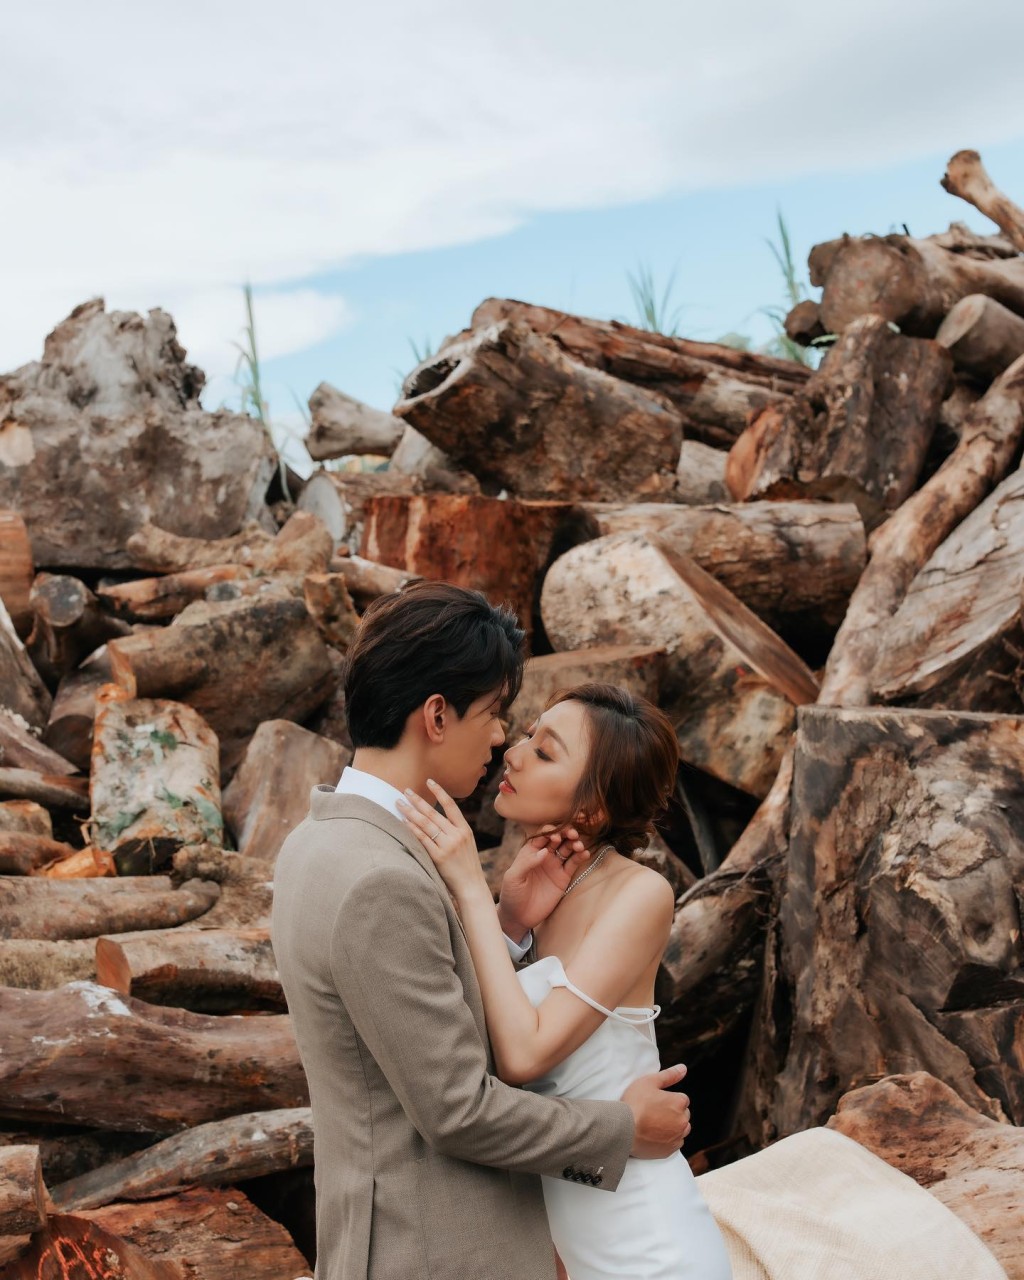 林奕匡和太太李霭玑两年前再影婚照庆祝木婚。